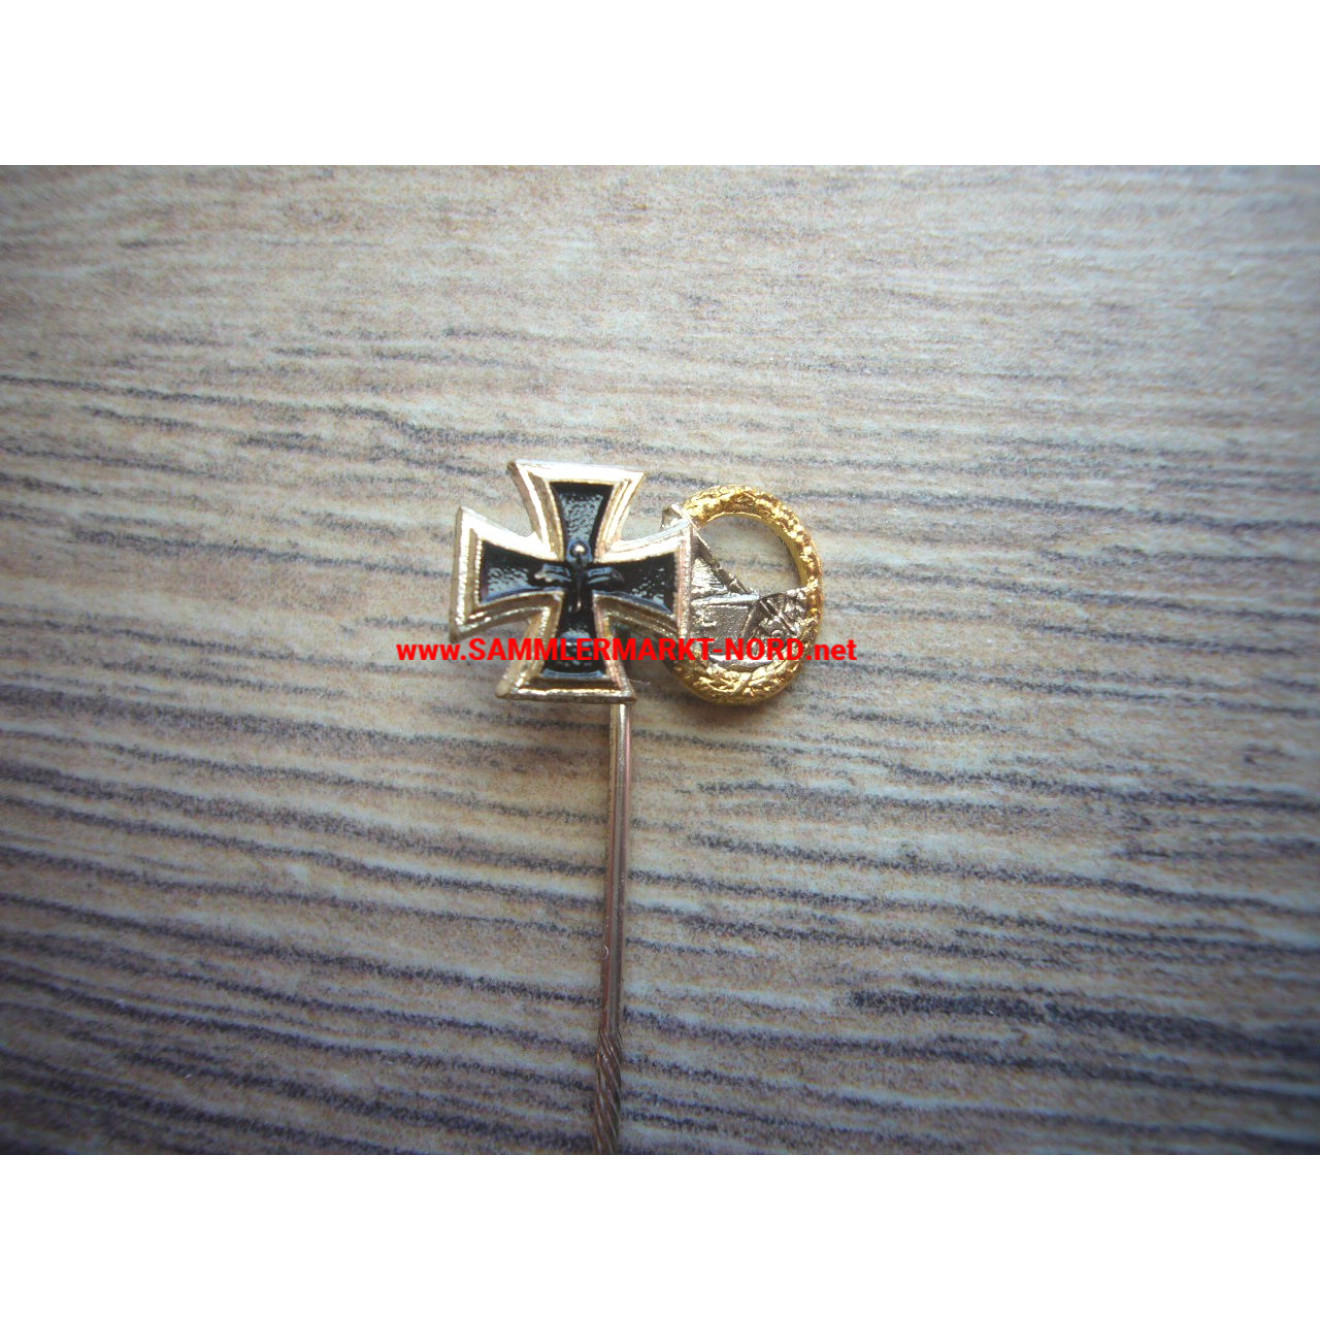 Iron Cross 1939 & Coastal Artillery War Badge - Miniature Pin